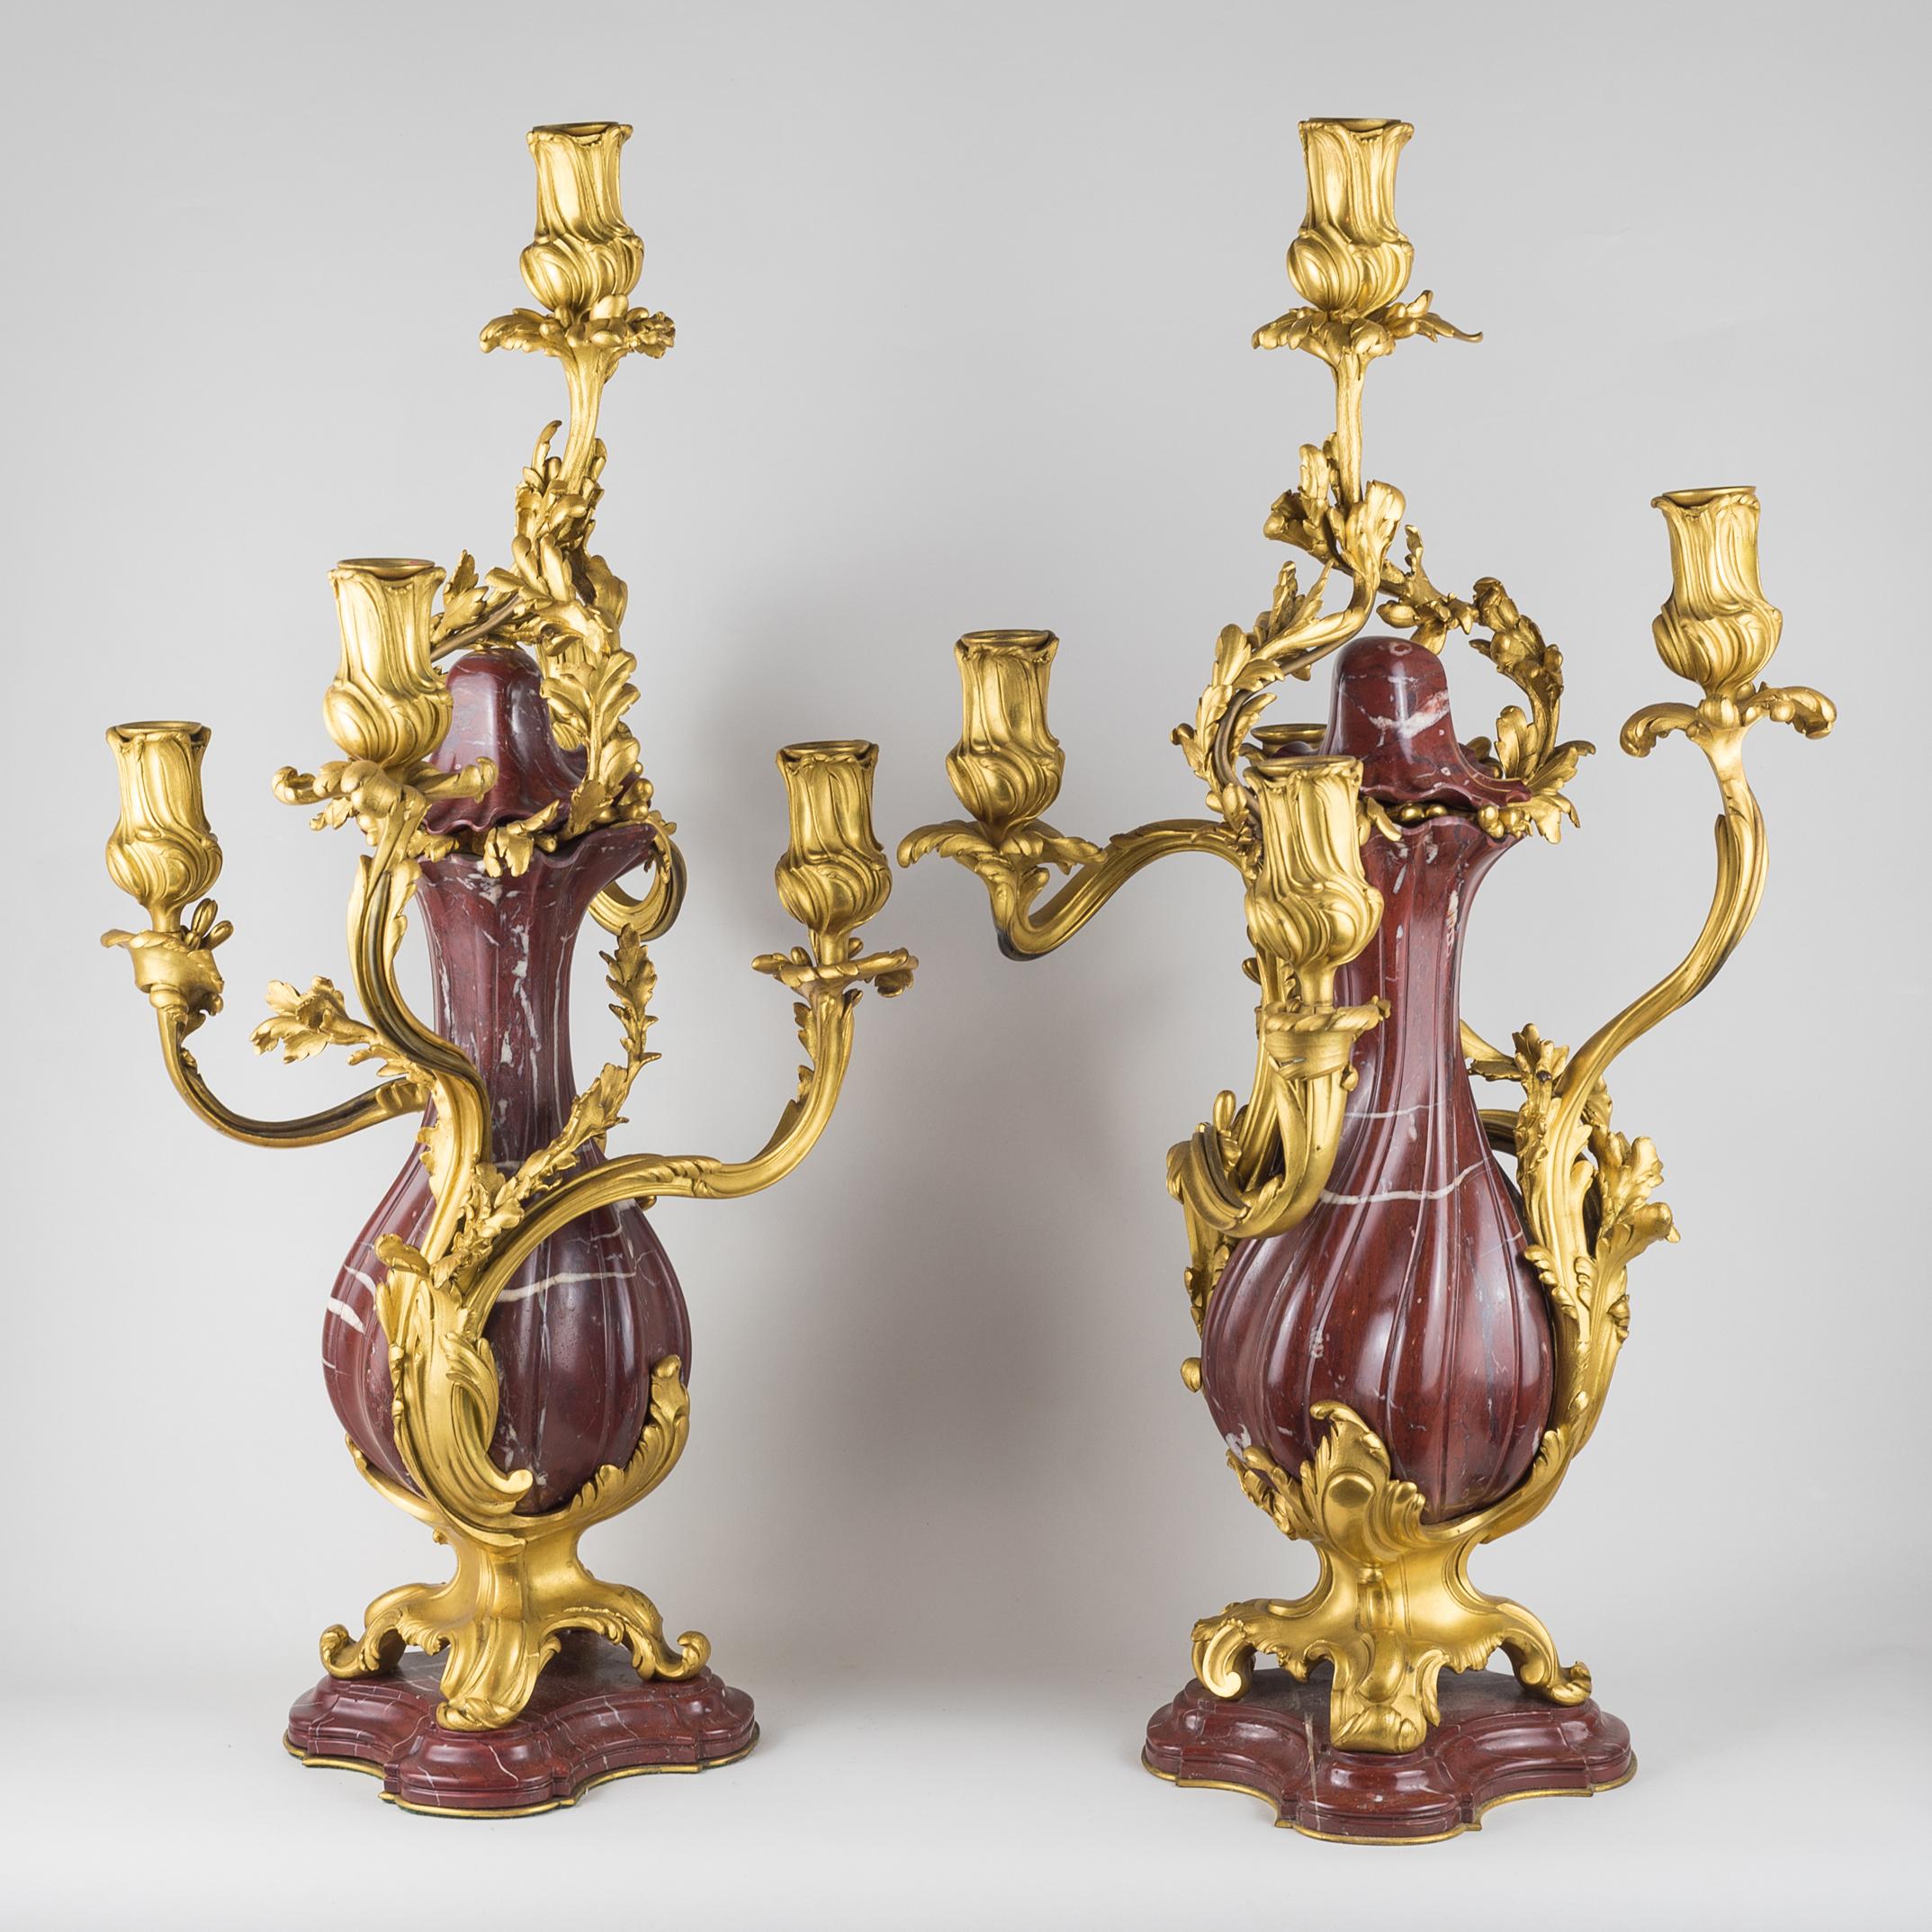 Paire de candélabres à cinq lumières de style Louis XV en bronze doré et marbre rouge de la fonderie E. Colin & Cie Paris, de forme balustre entrelacée d'ornements feuillagés sur les bras en volute, reposant sur des pieds façonnés et une plinthe